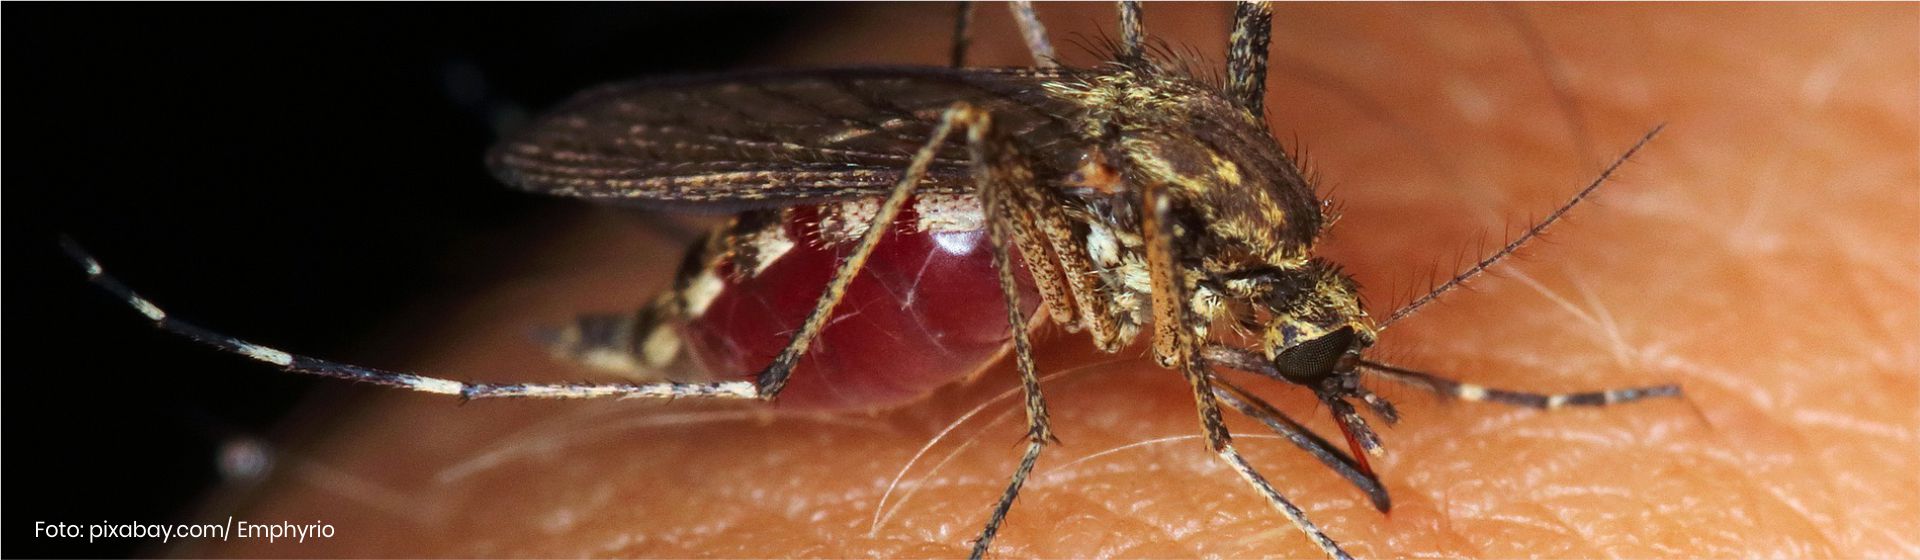 Epidemia de Zika vivida en Colombia. Día mundial del medio ambiente- Cider | Uniandes